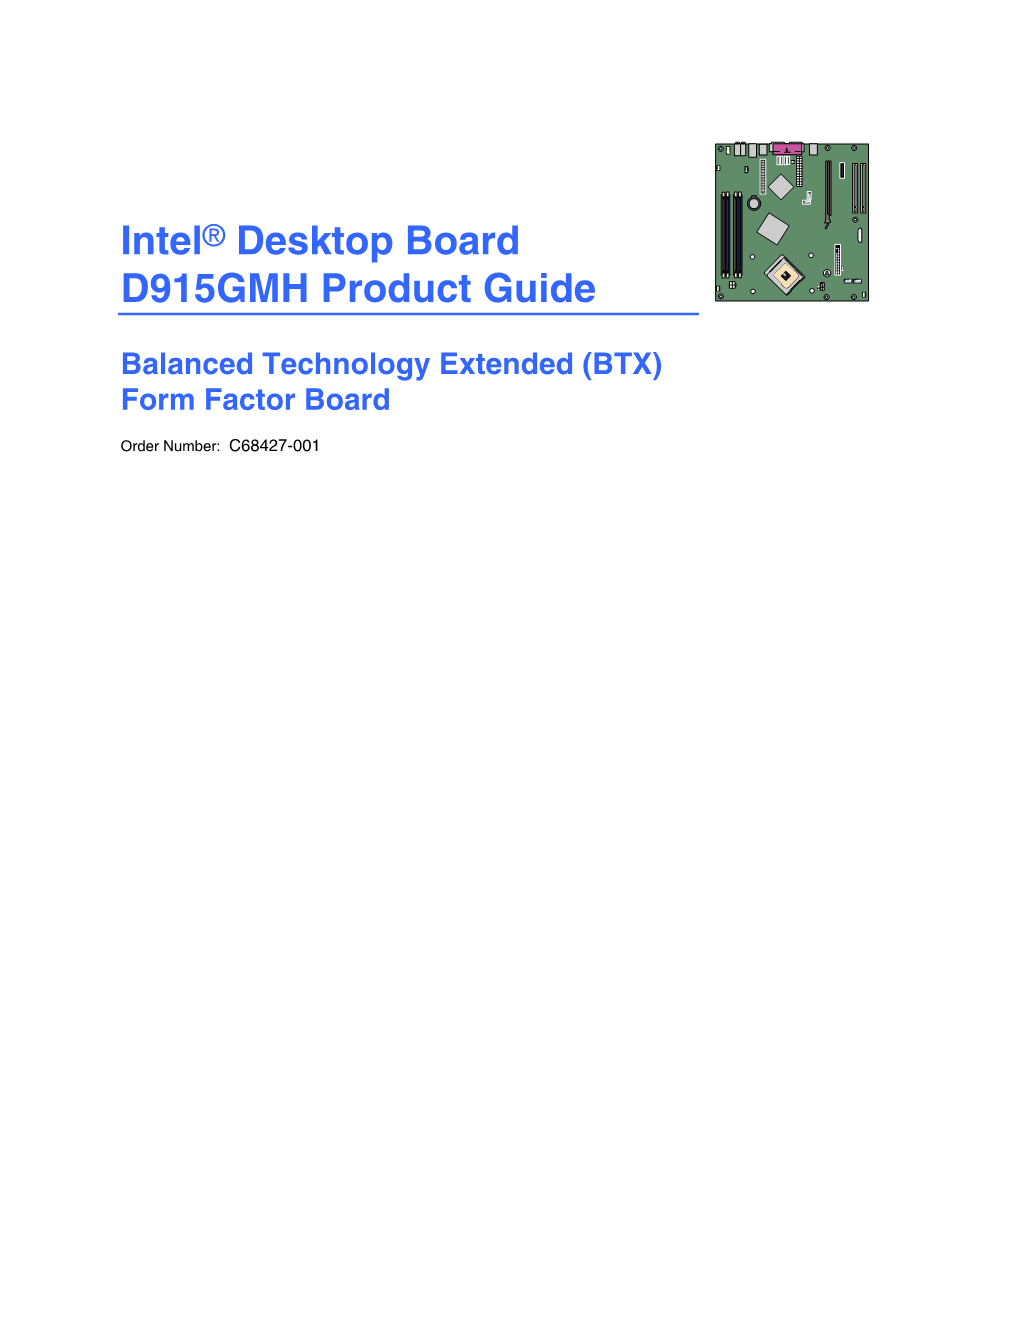 Intel® Desktop Board D915GMH Product Guide